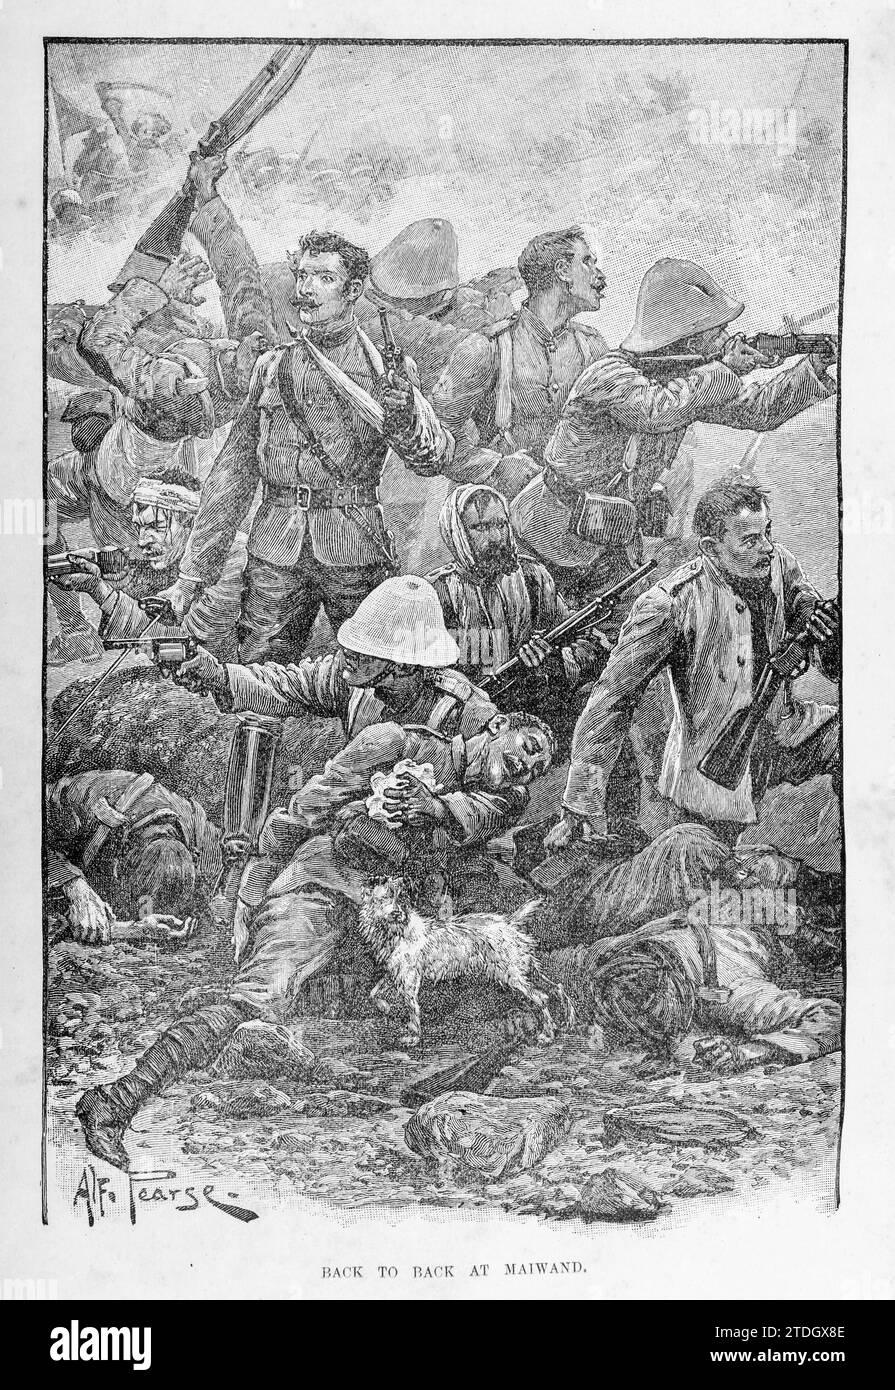 Der letzte Stand des 66. Regiments in der Schlacht von Maiwand (27. Juli 1880) während des Zweiten Afghanischen Krieges. Nur wenige britische Truppen überlebten, zusammen mit dem Hund Bobbie, dem Regimentsmaskottchen Stockfoto